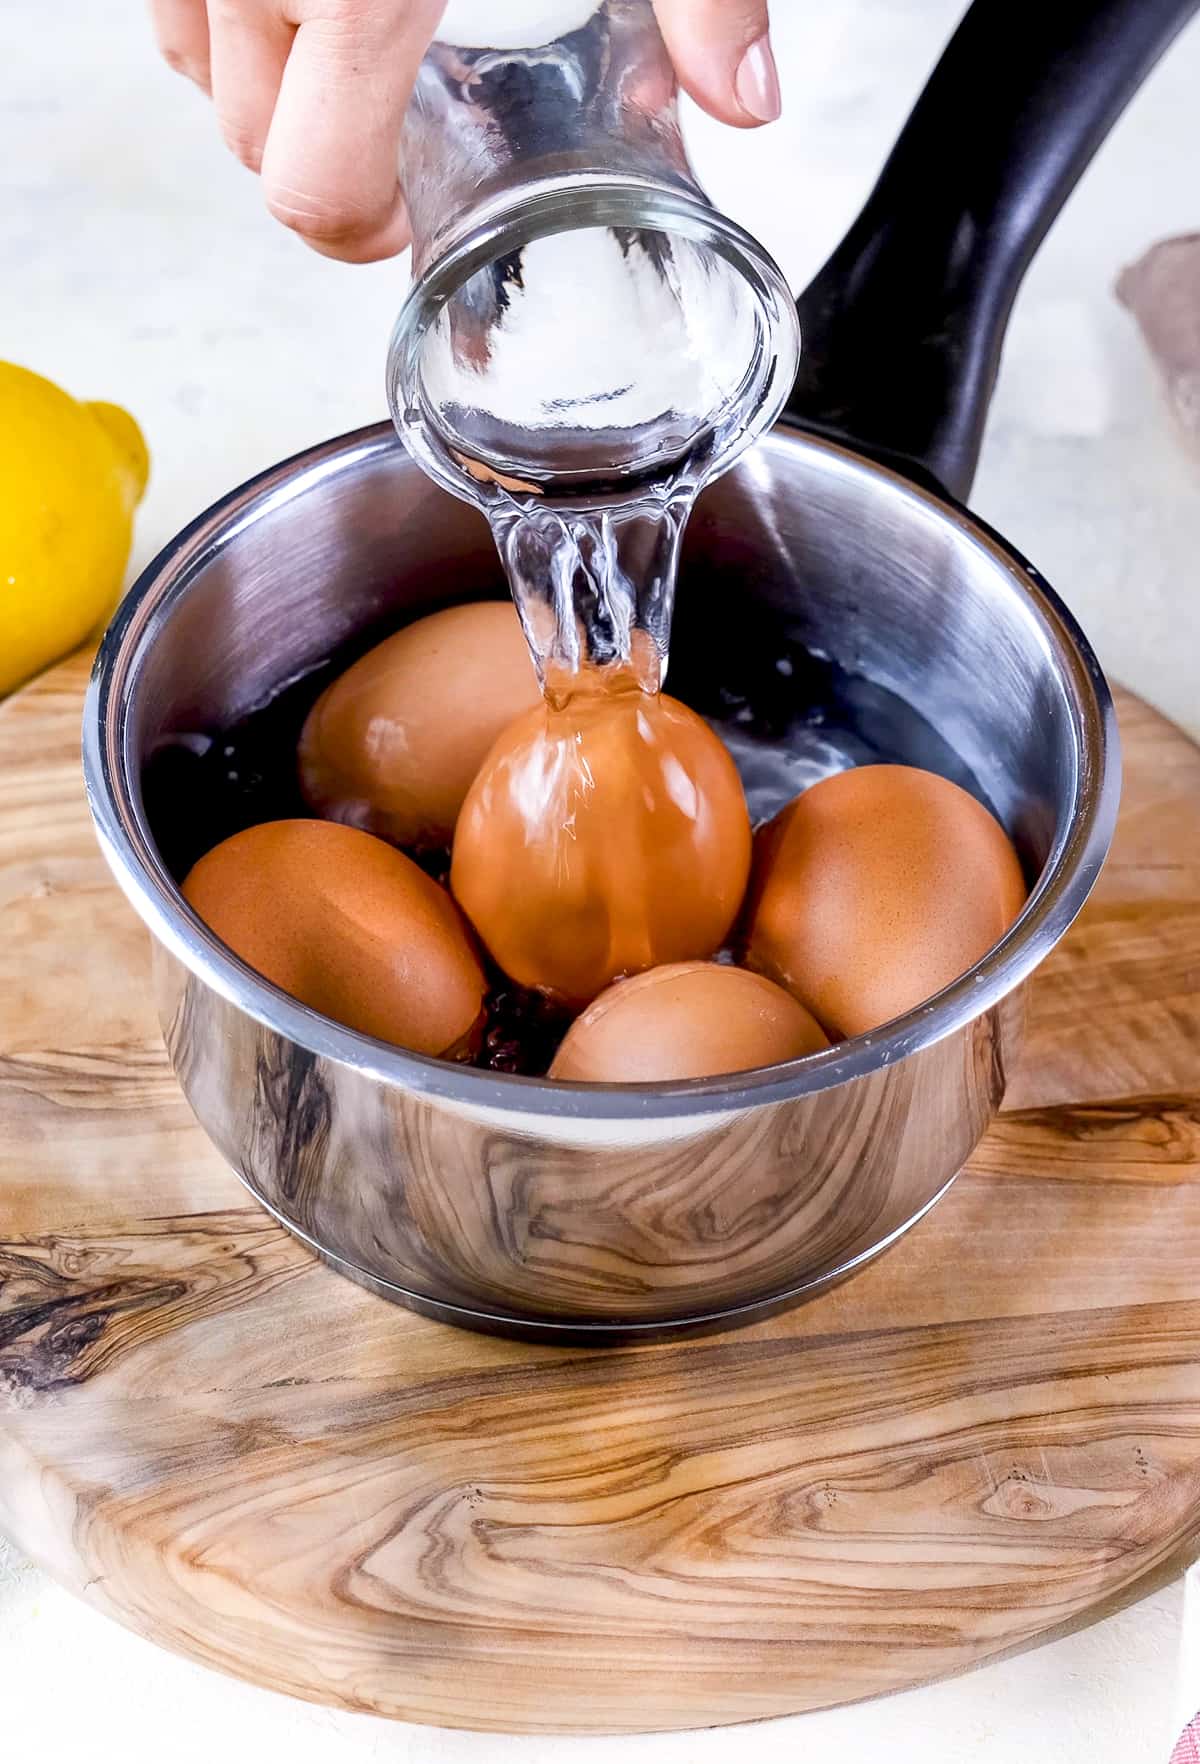 用手把水倒在平底锅里的鸡蛋上。